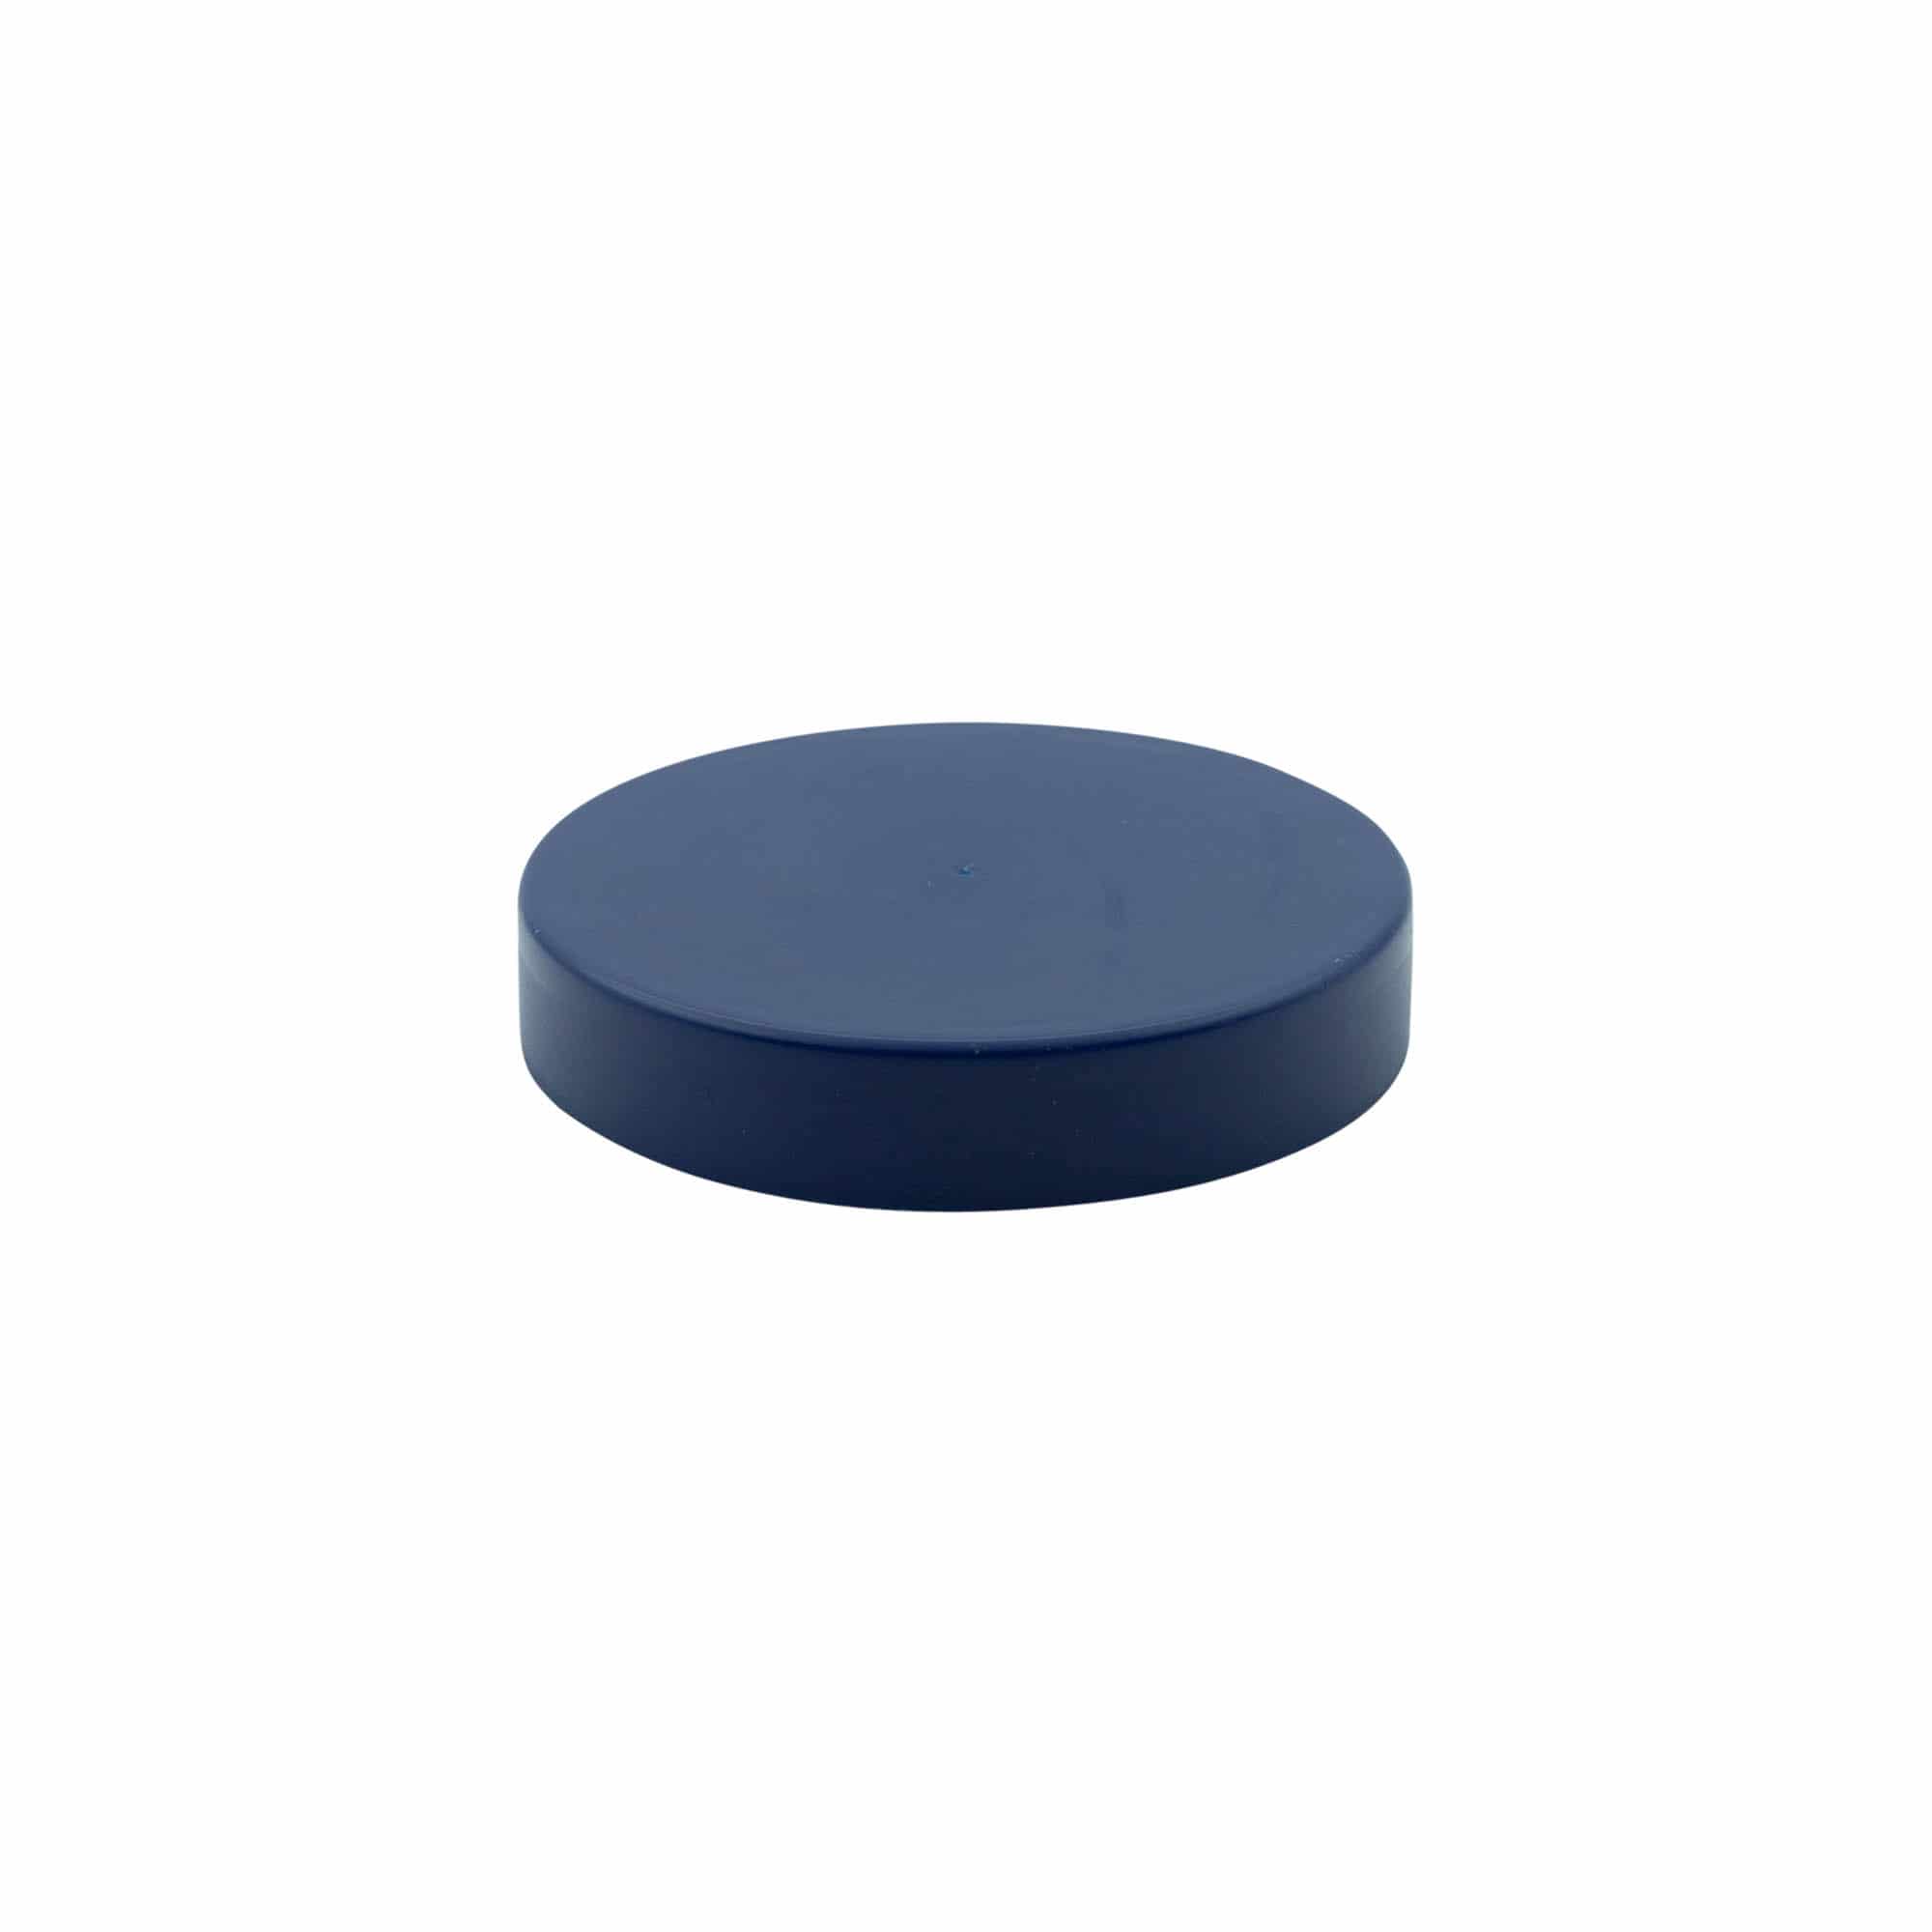 Stülpdeckel für Standard-Keramiktopf, HDPE-Kunststoff, blau